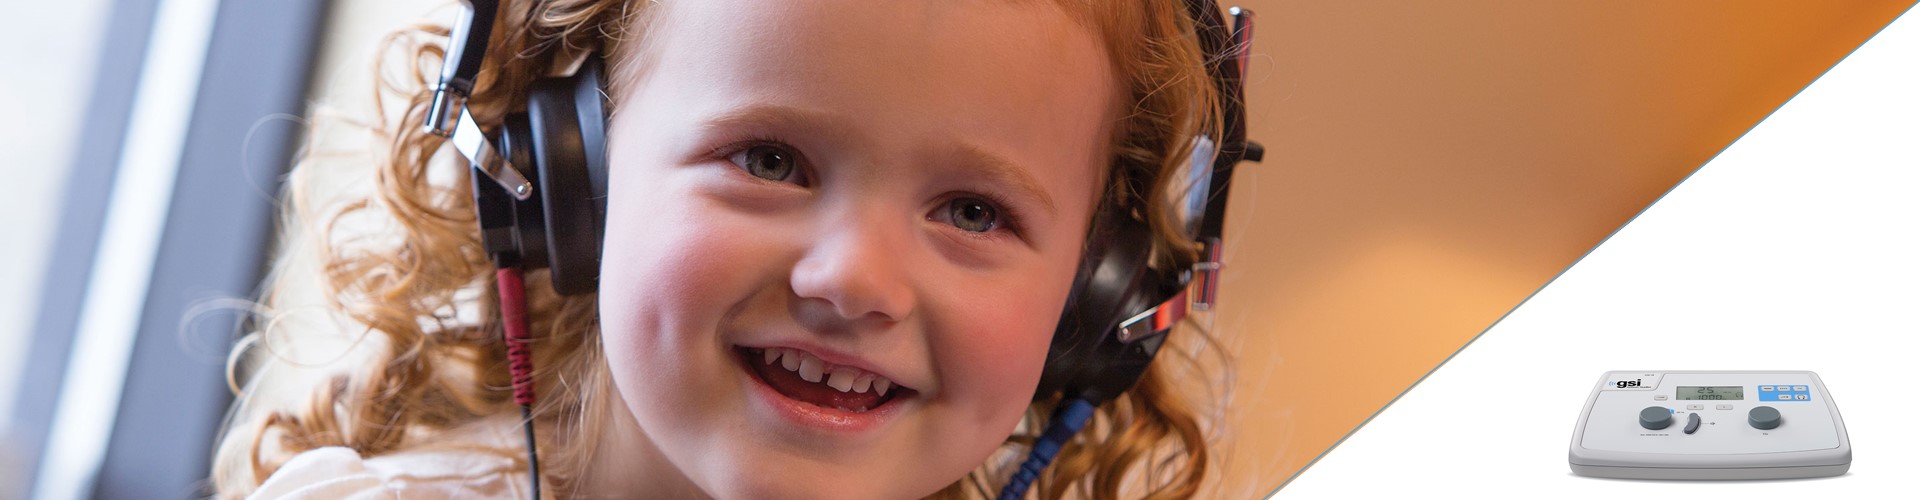 fotografía de una niña utilizando audífonos